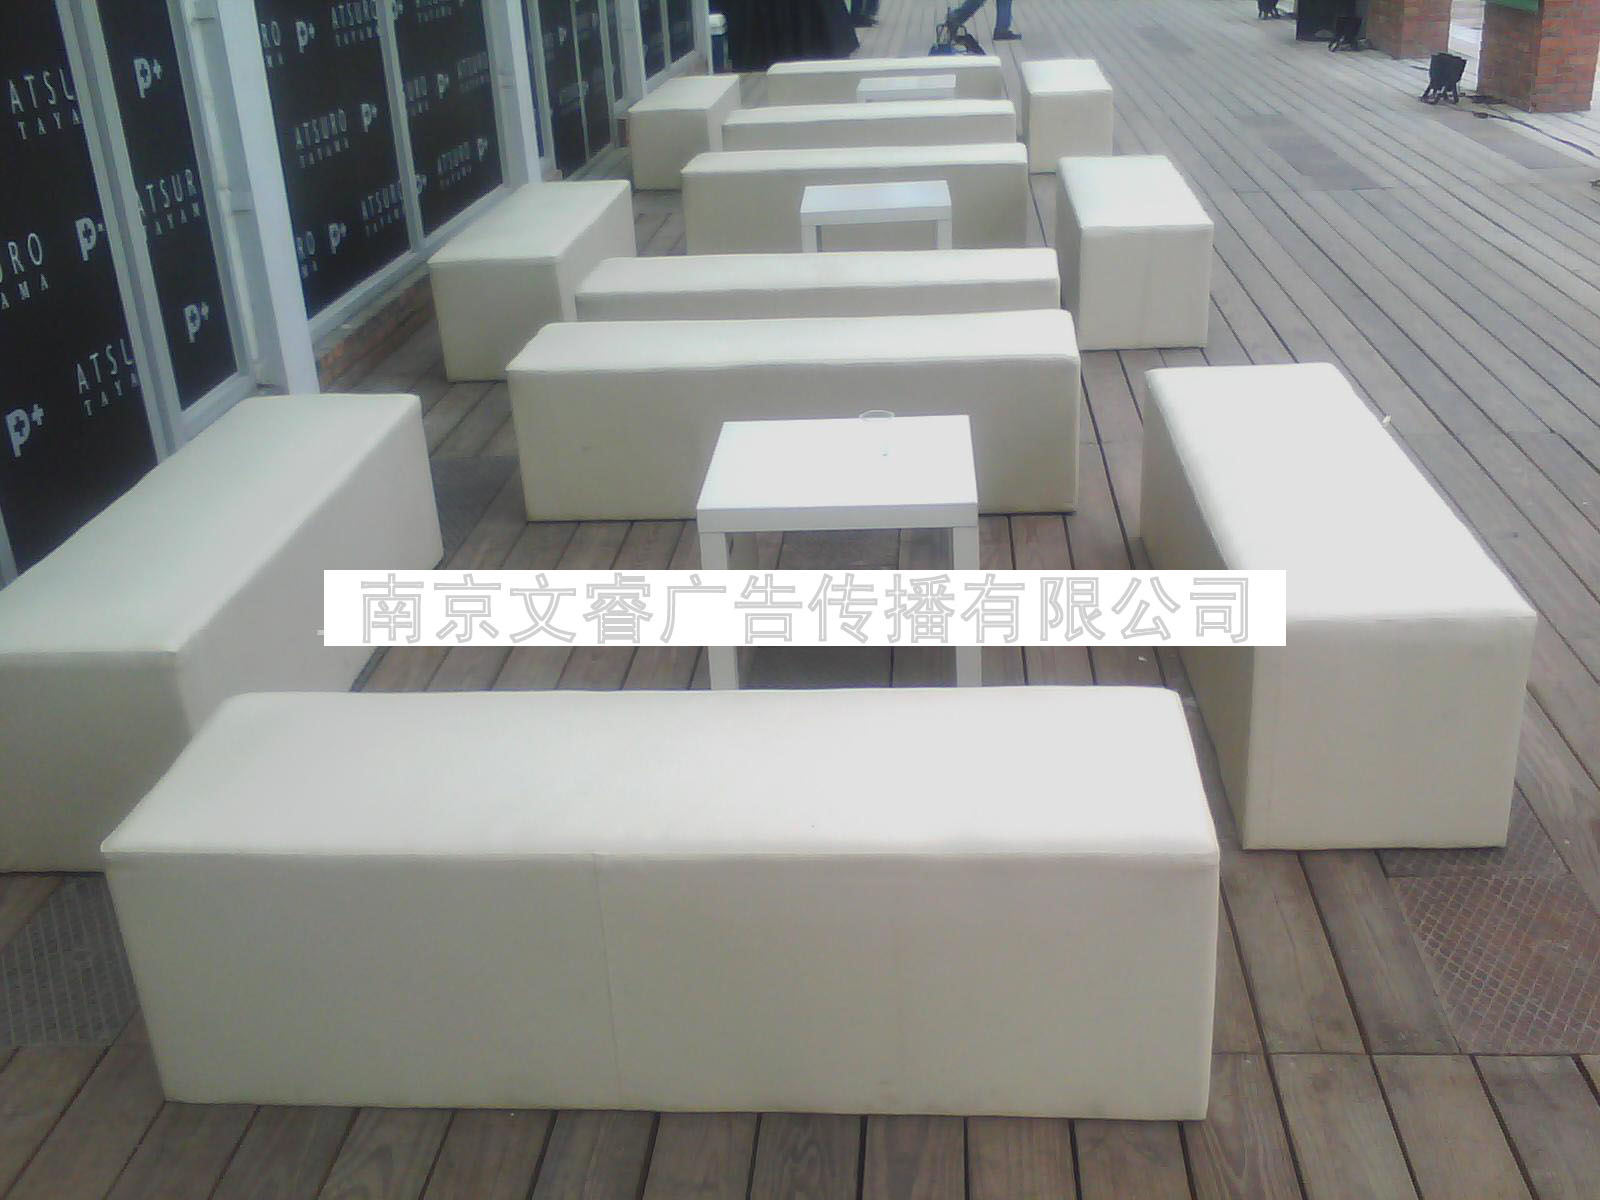 南京土司凳出租 南京土司沙发租赁 南京单人沙发出租